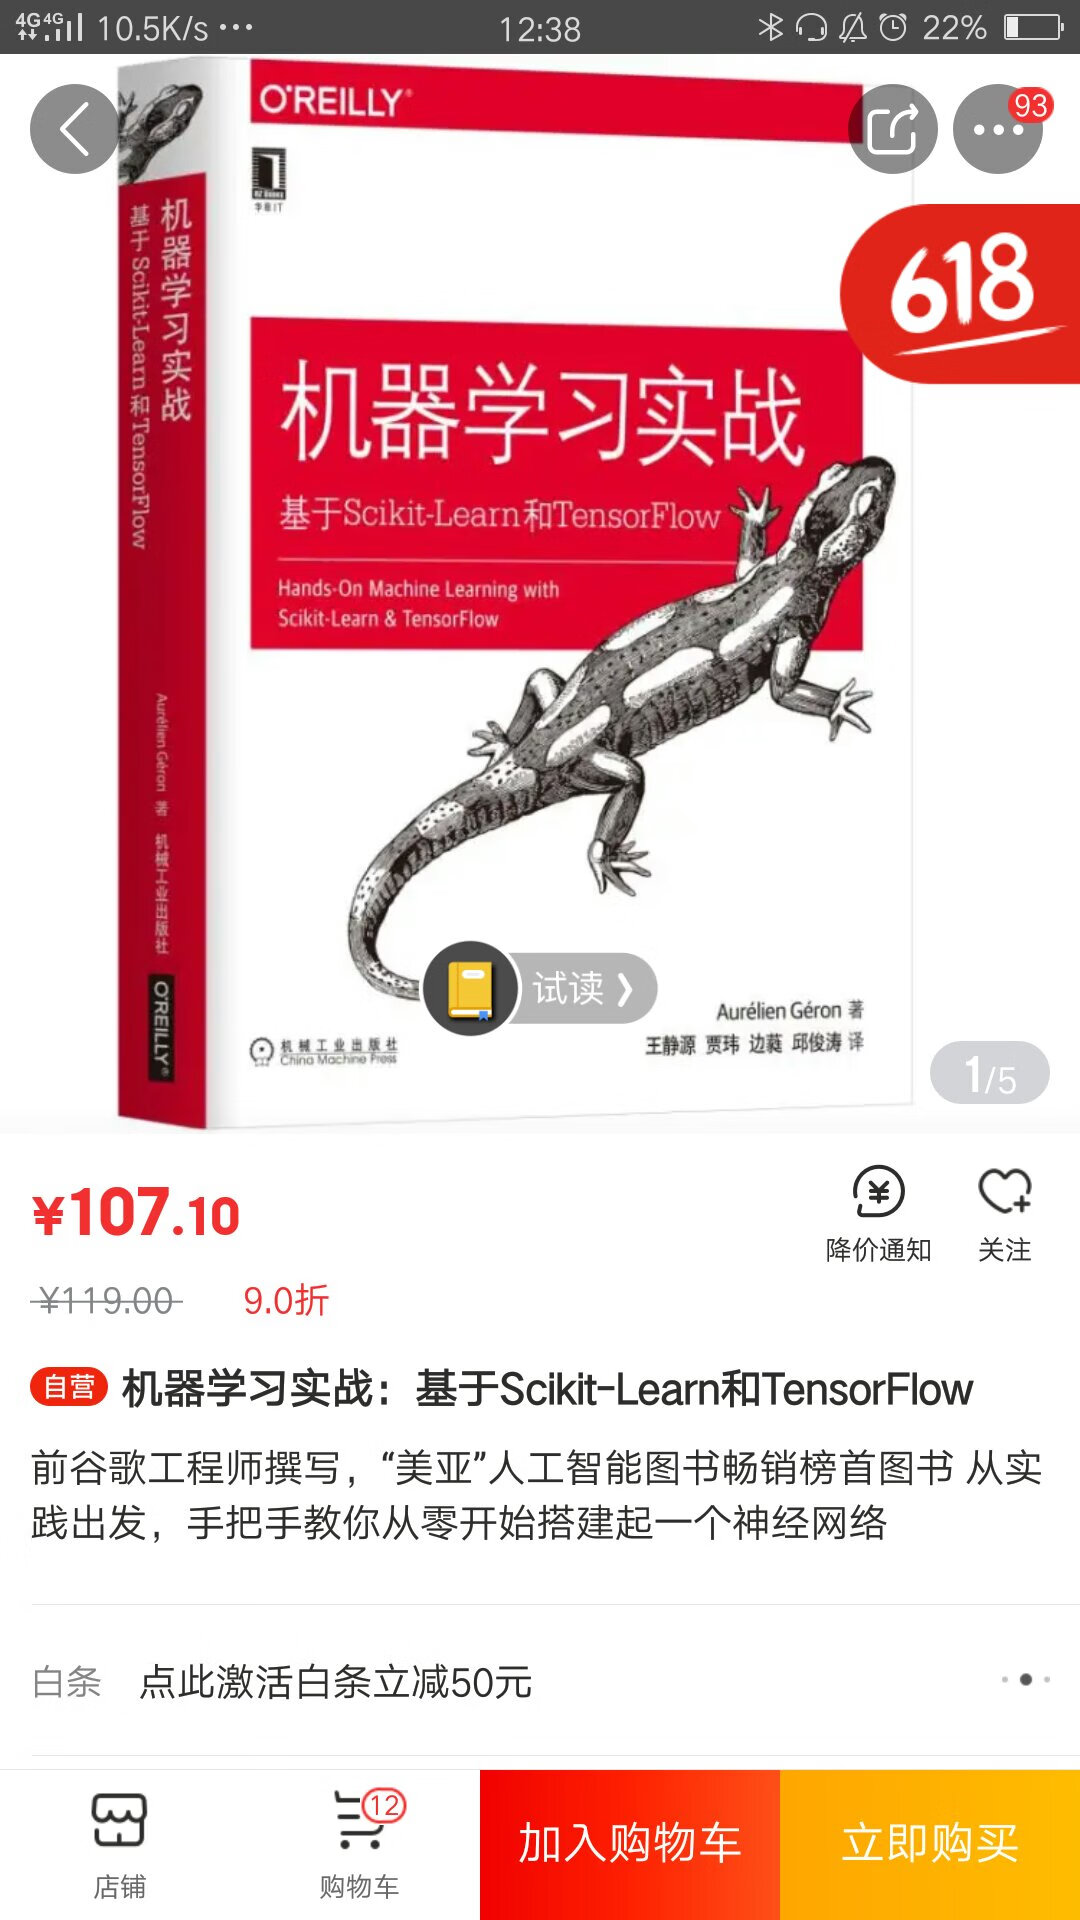 Python和深度学习，很不错的书，以后好好看看。